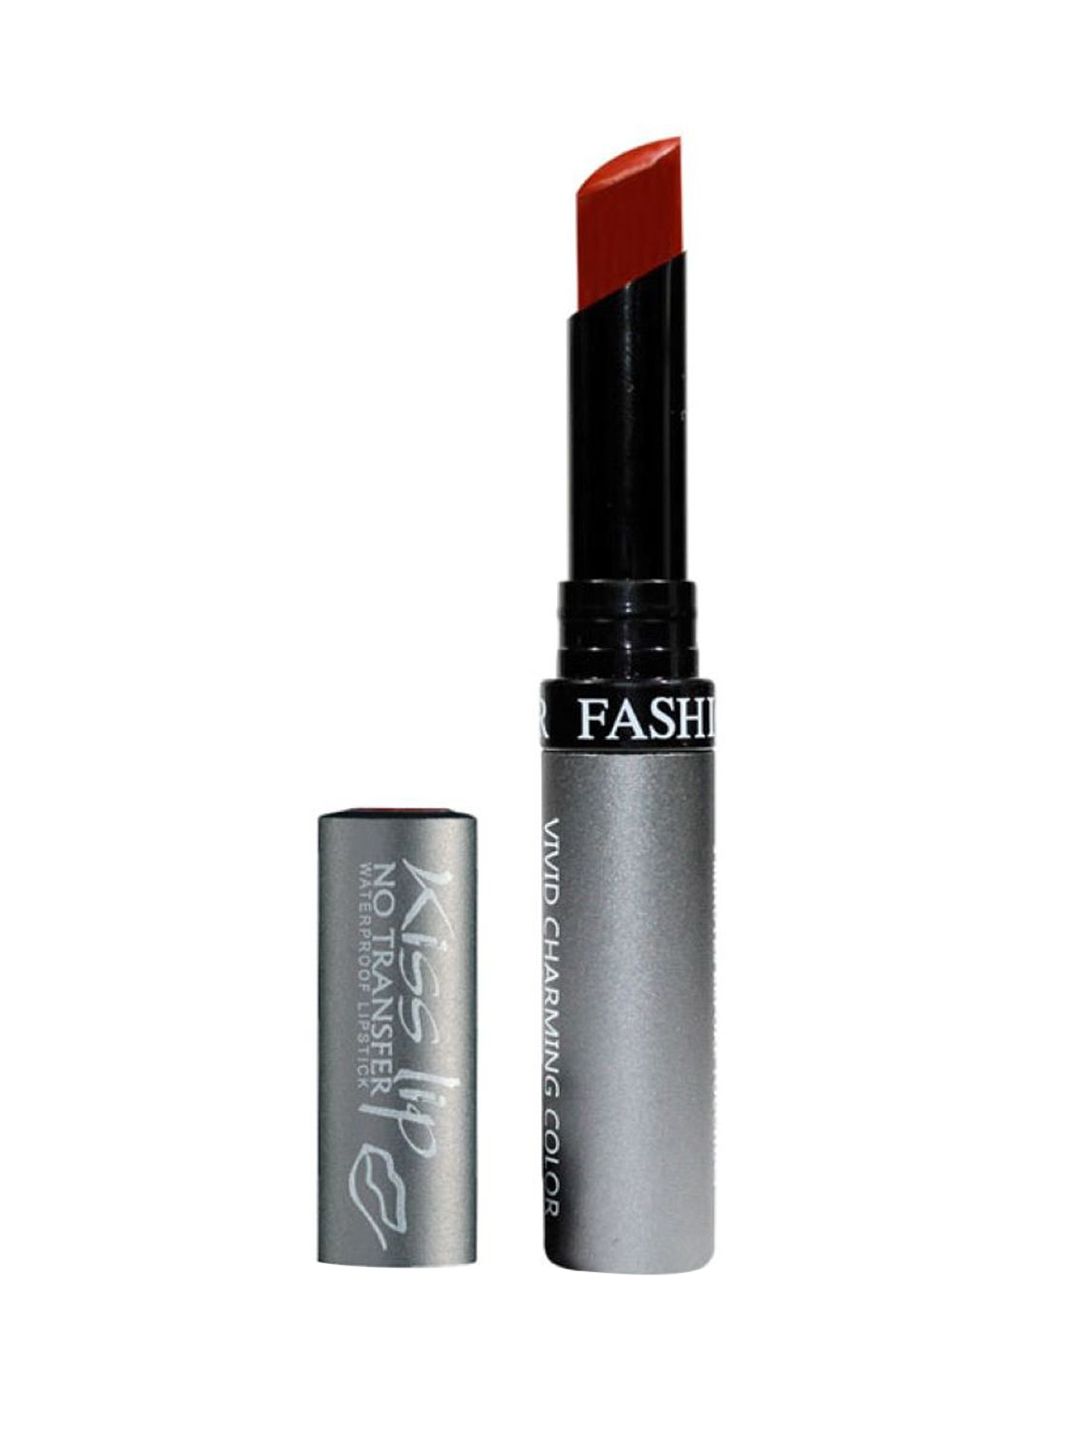 Fashion Colour Kiss Lip No-Transfer Waterproof Lipstick 2.6 g - Terra Cotta 77 Price in India